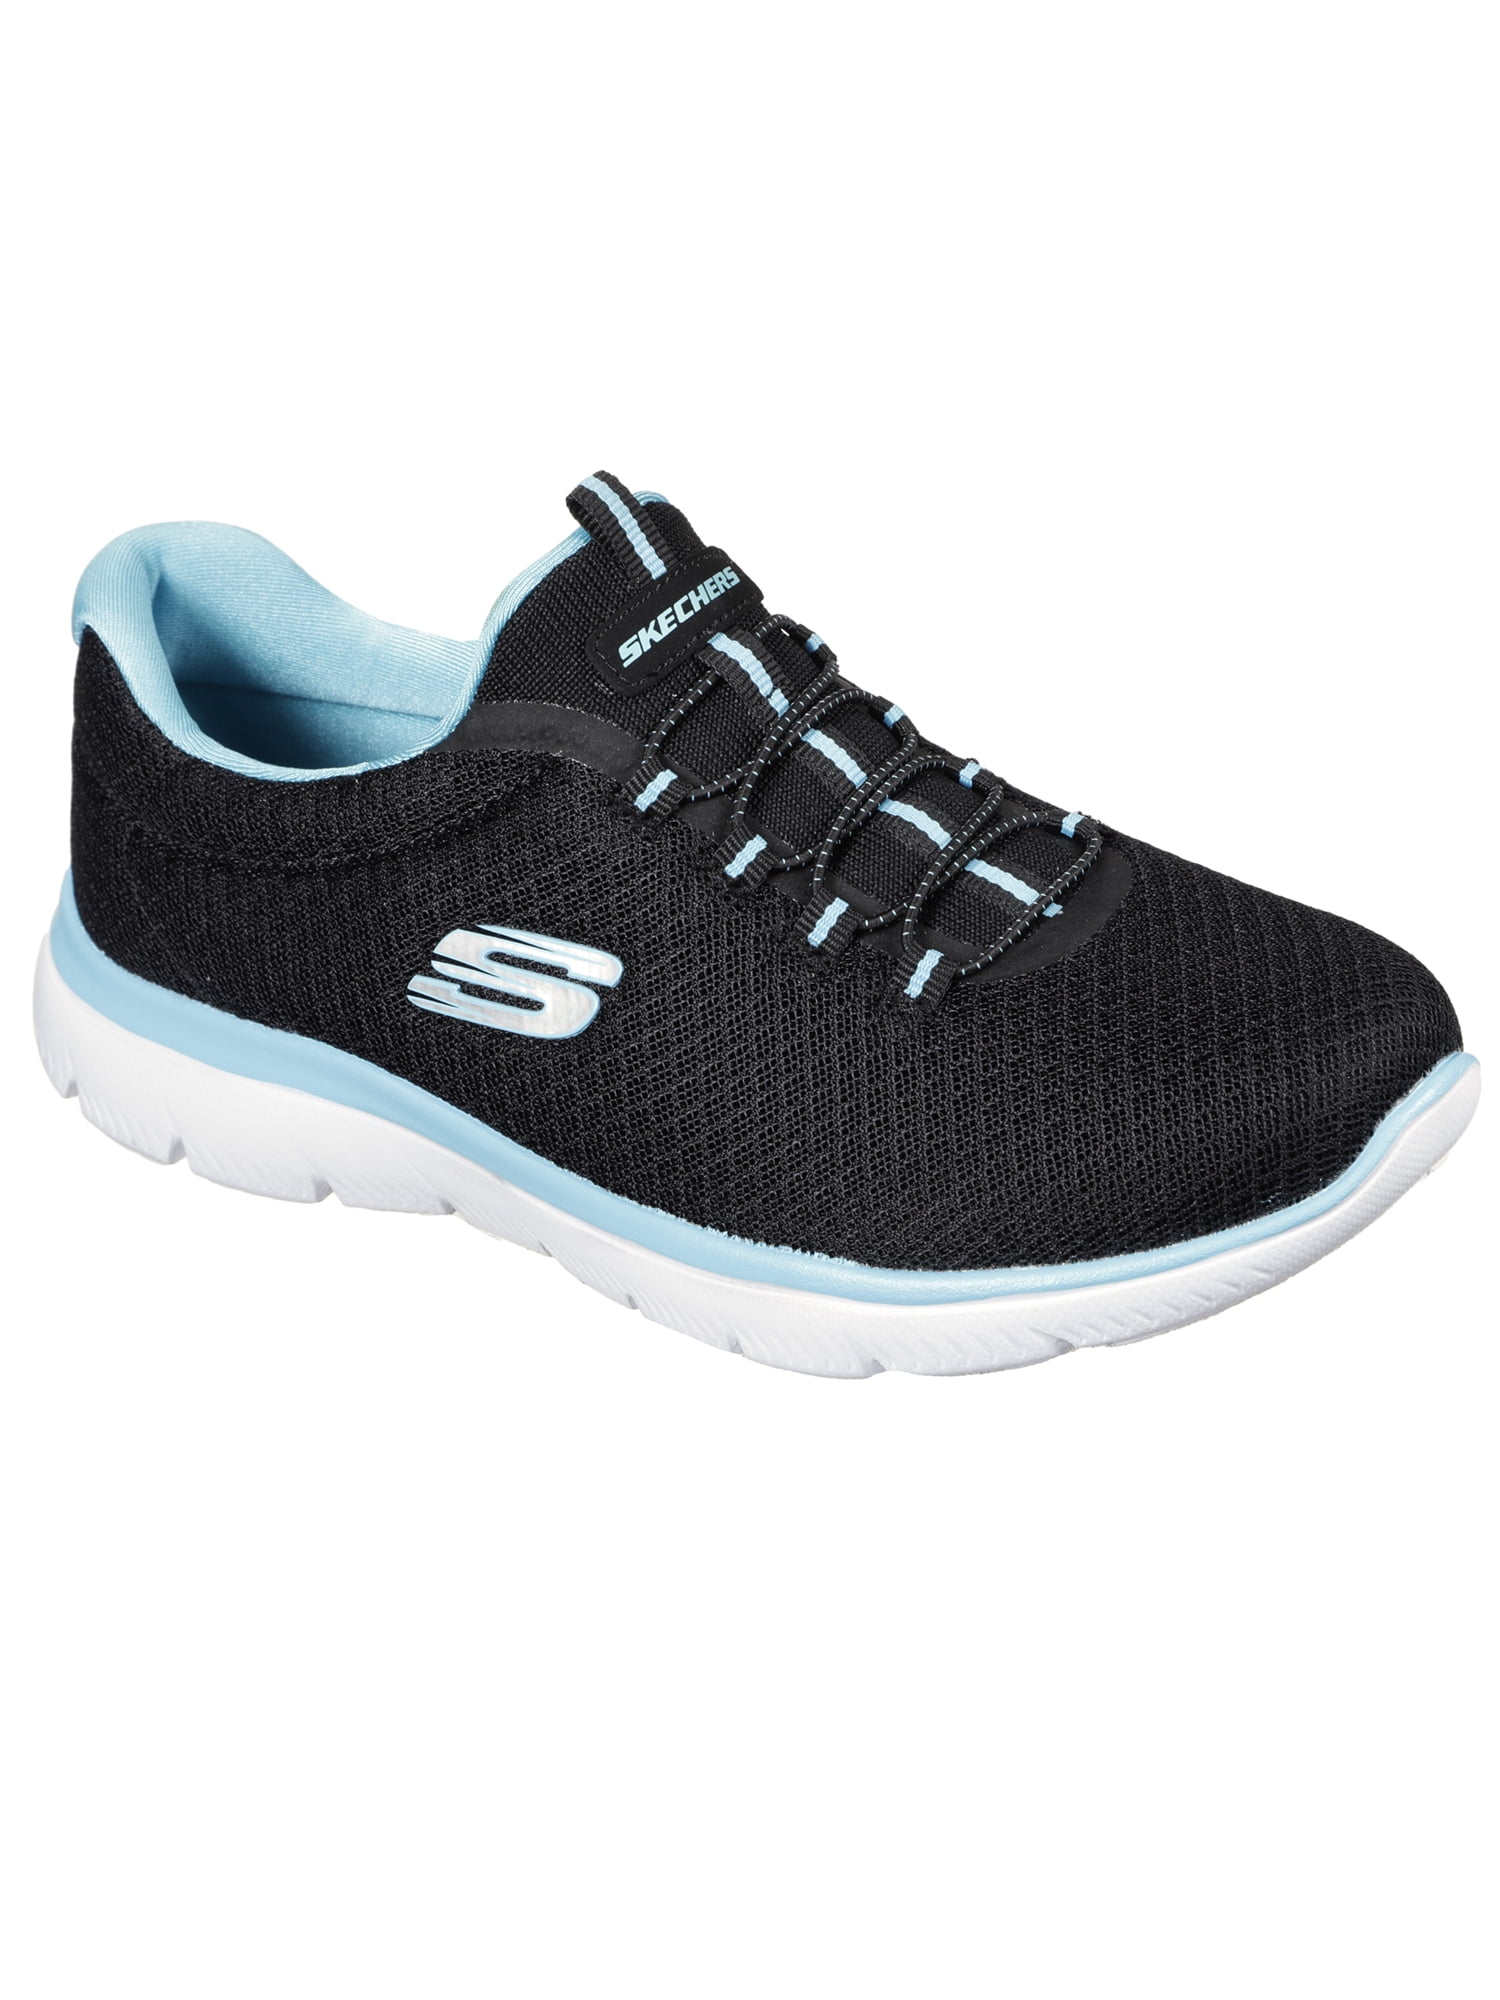 Skechers Women's Sport Summits Slip-on Athletic Sneaker (Wide Widths Available) - Walmart.com